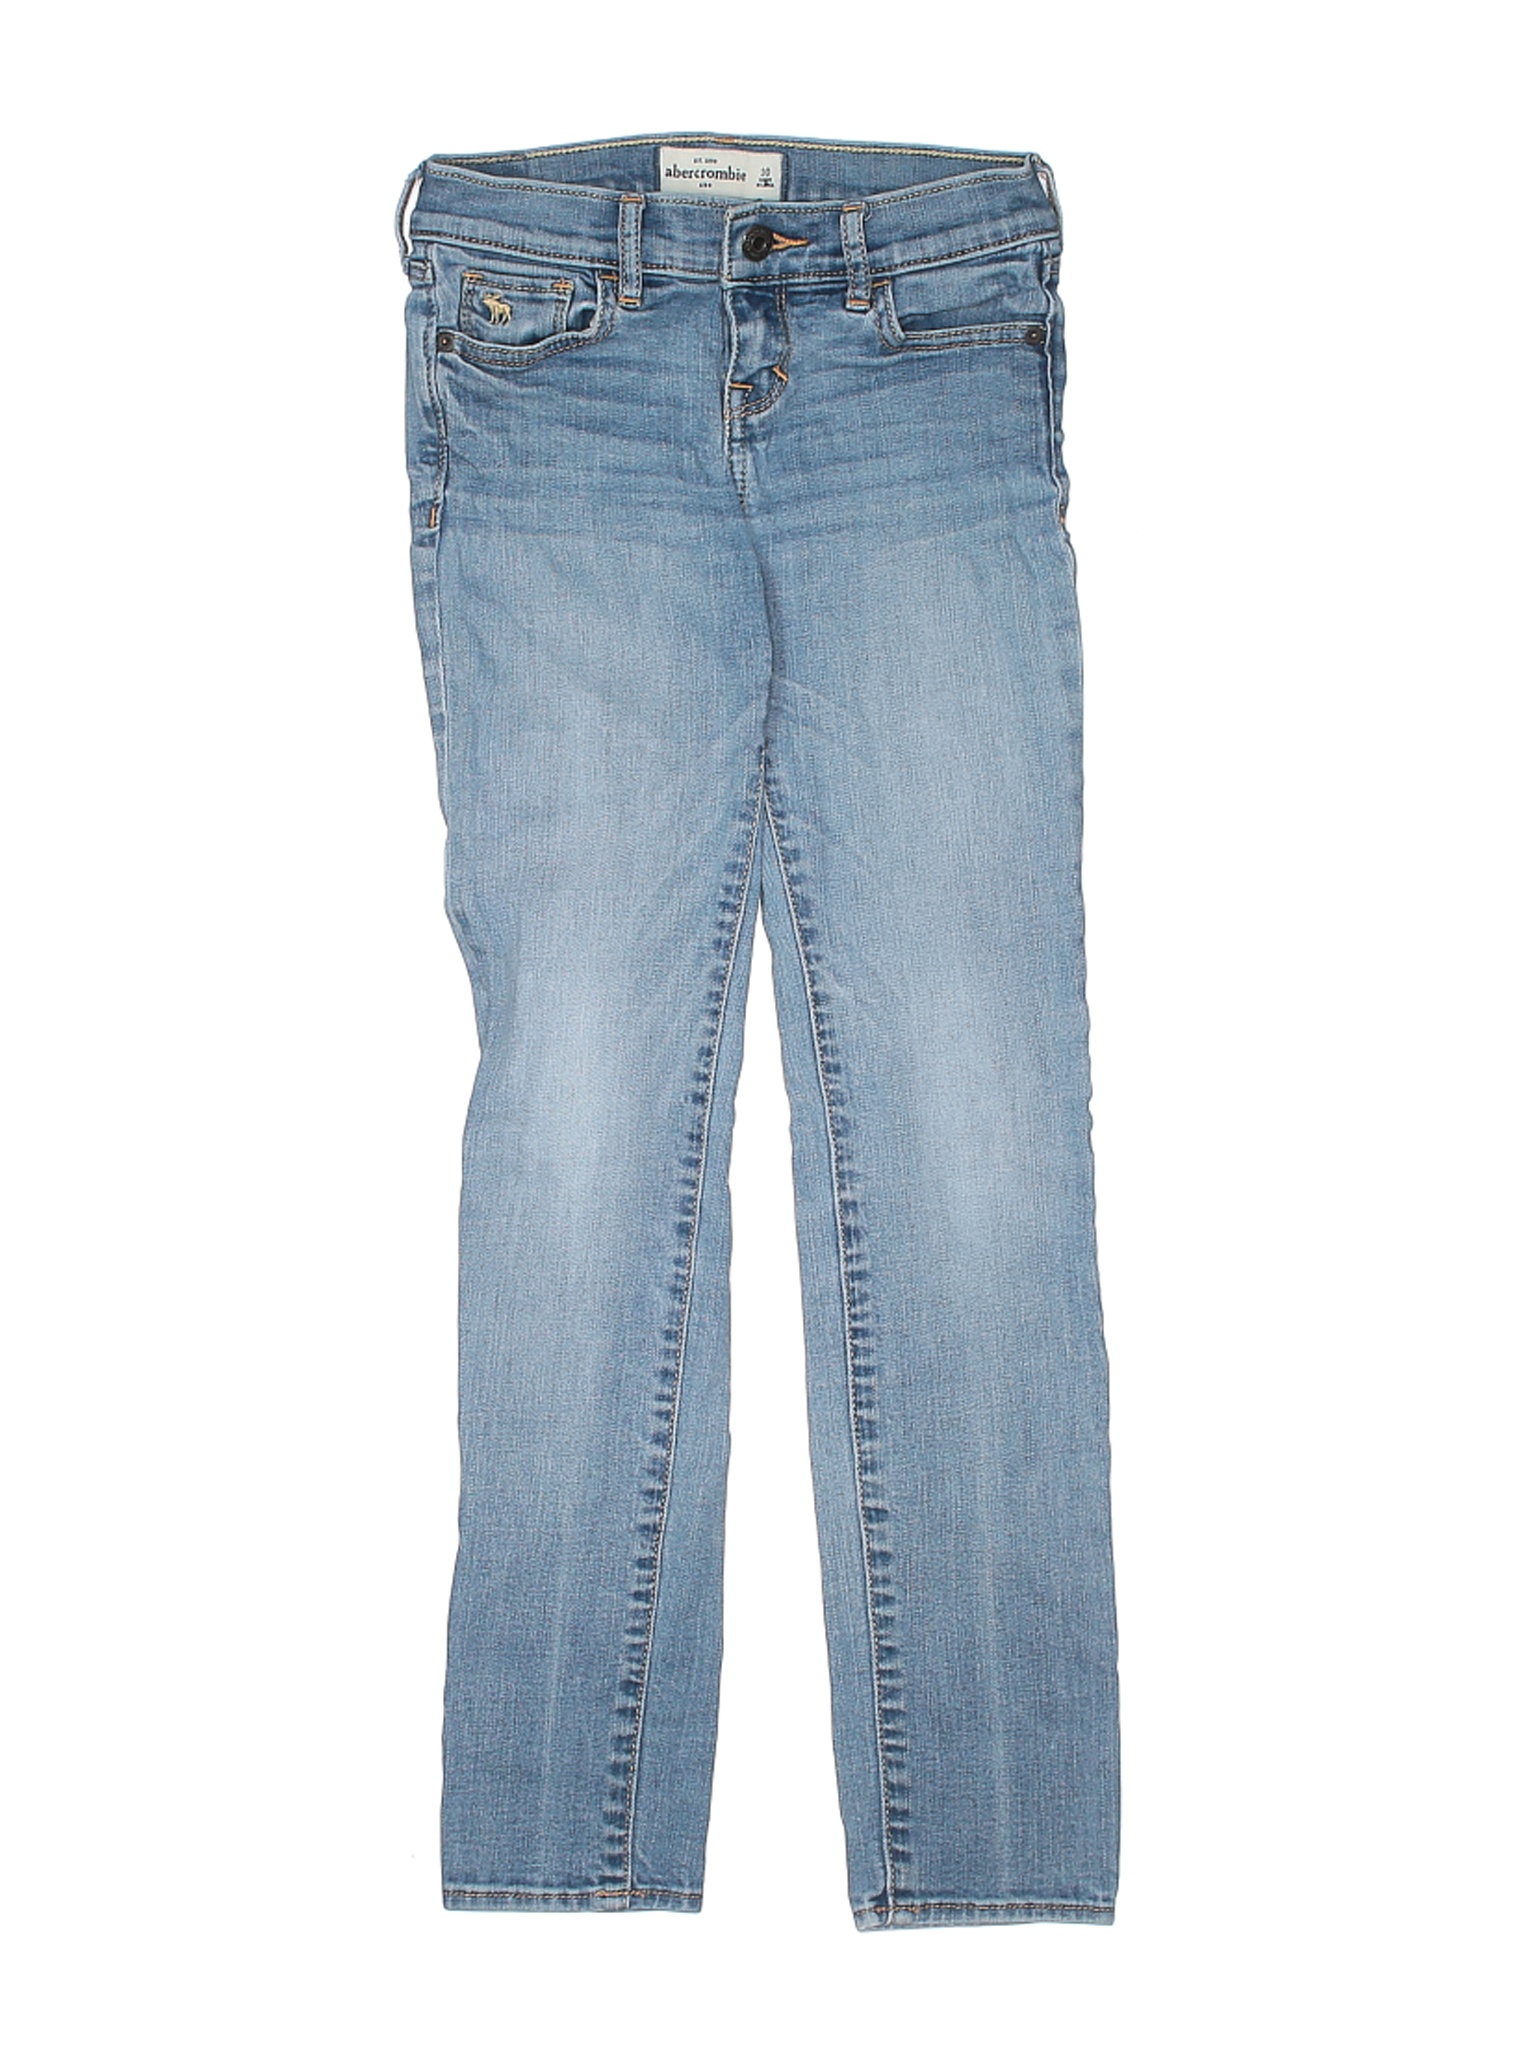 Abercrombie Women Blue Jeans 10 | eBay